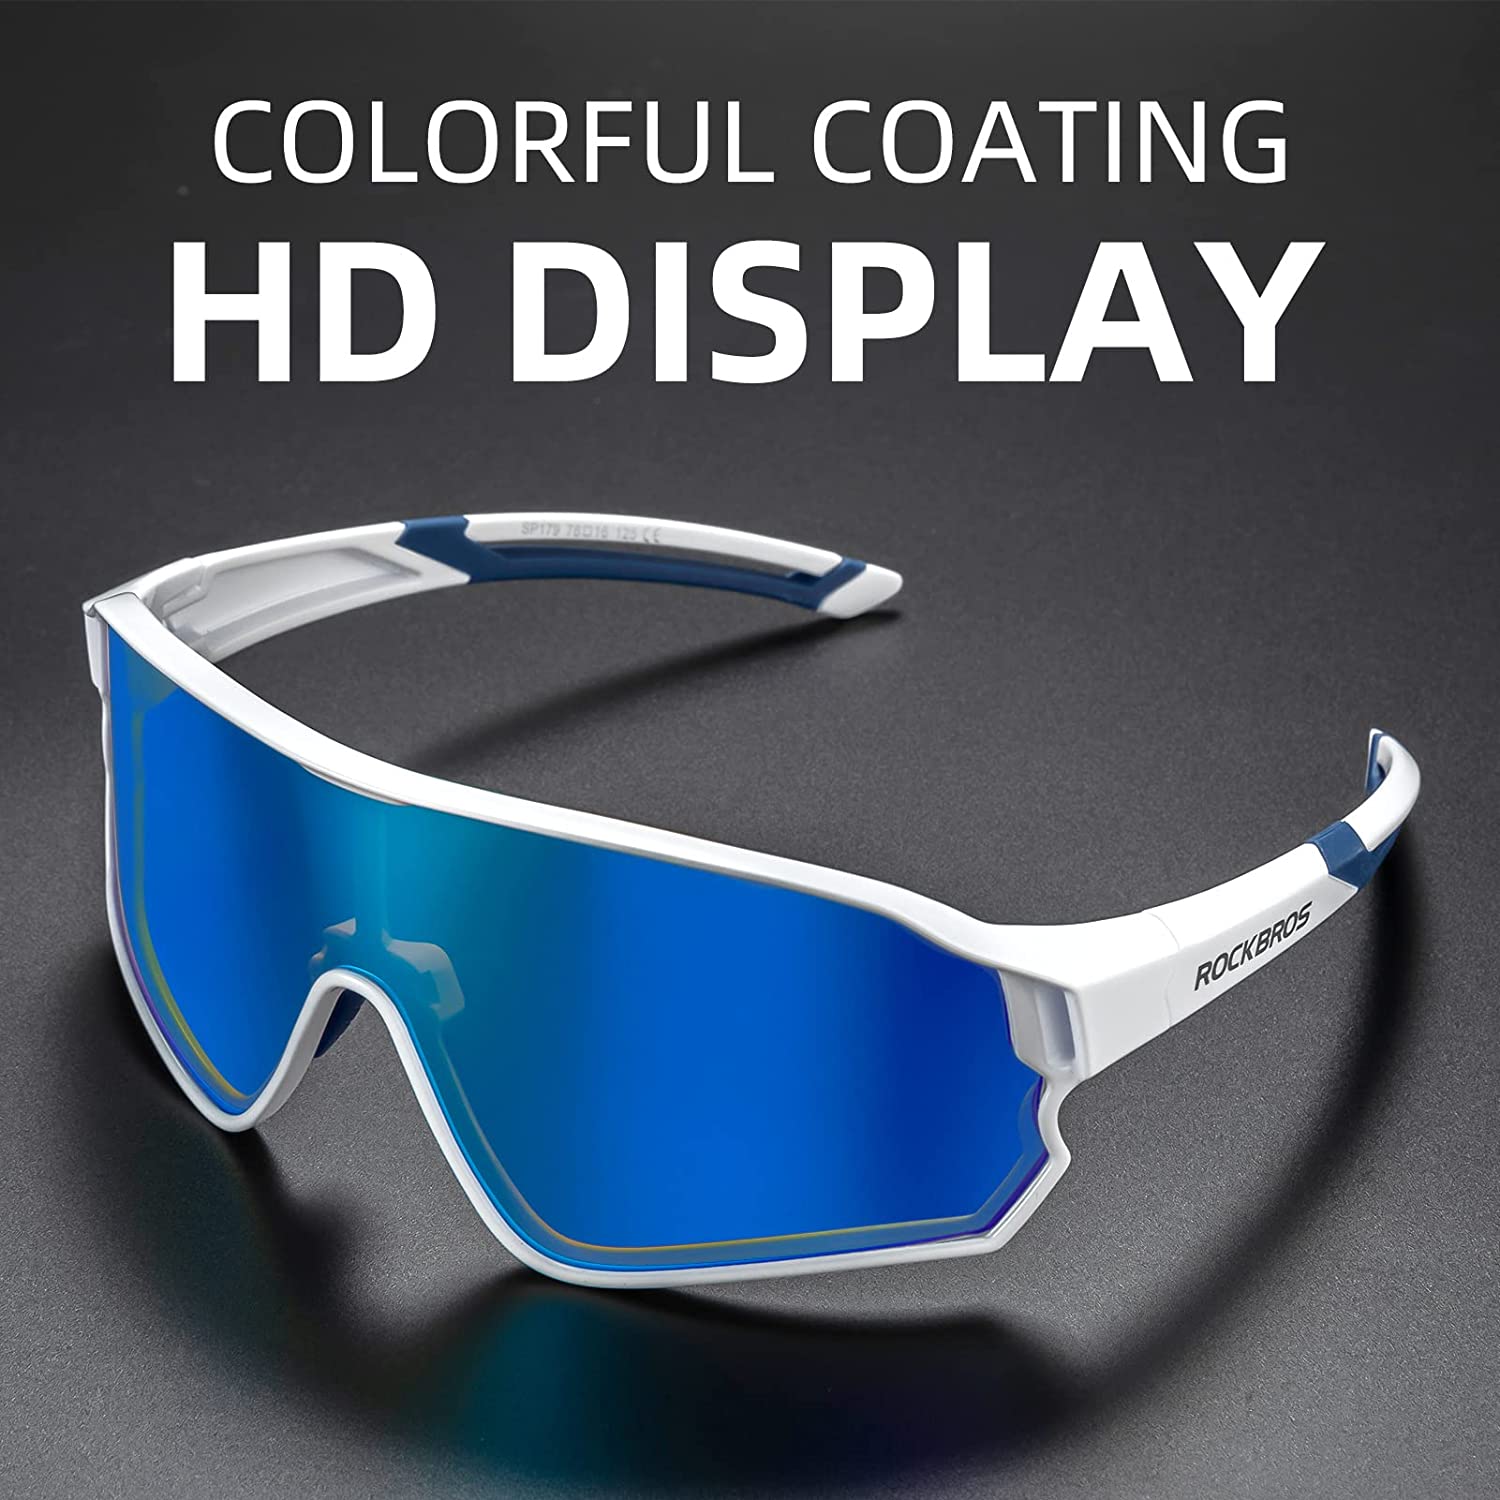 ROCKBROS Polarized Sunglasses UV Protection White Blue